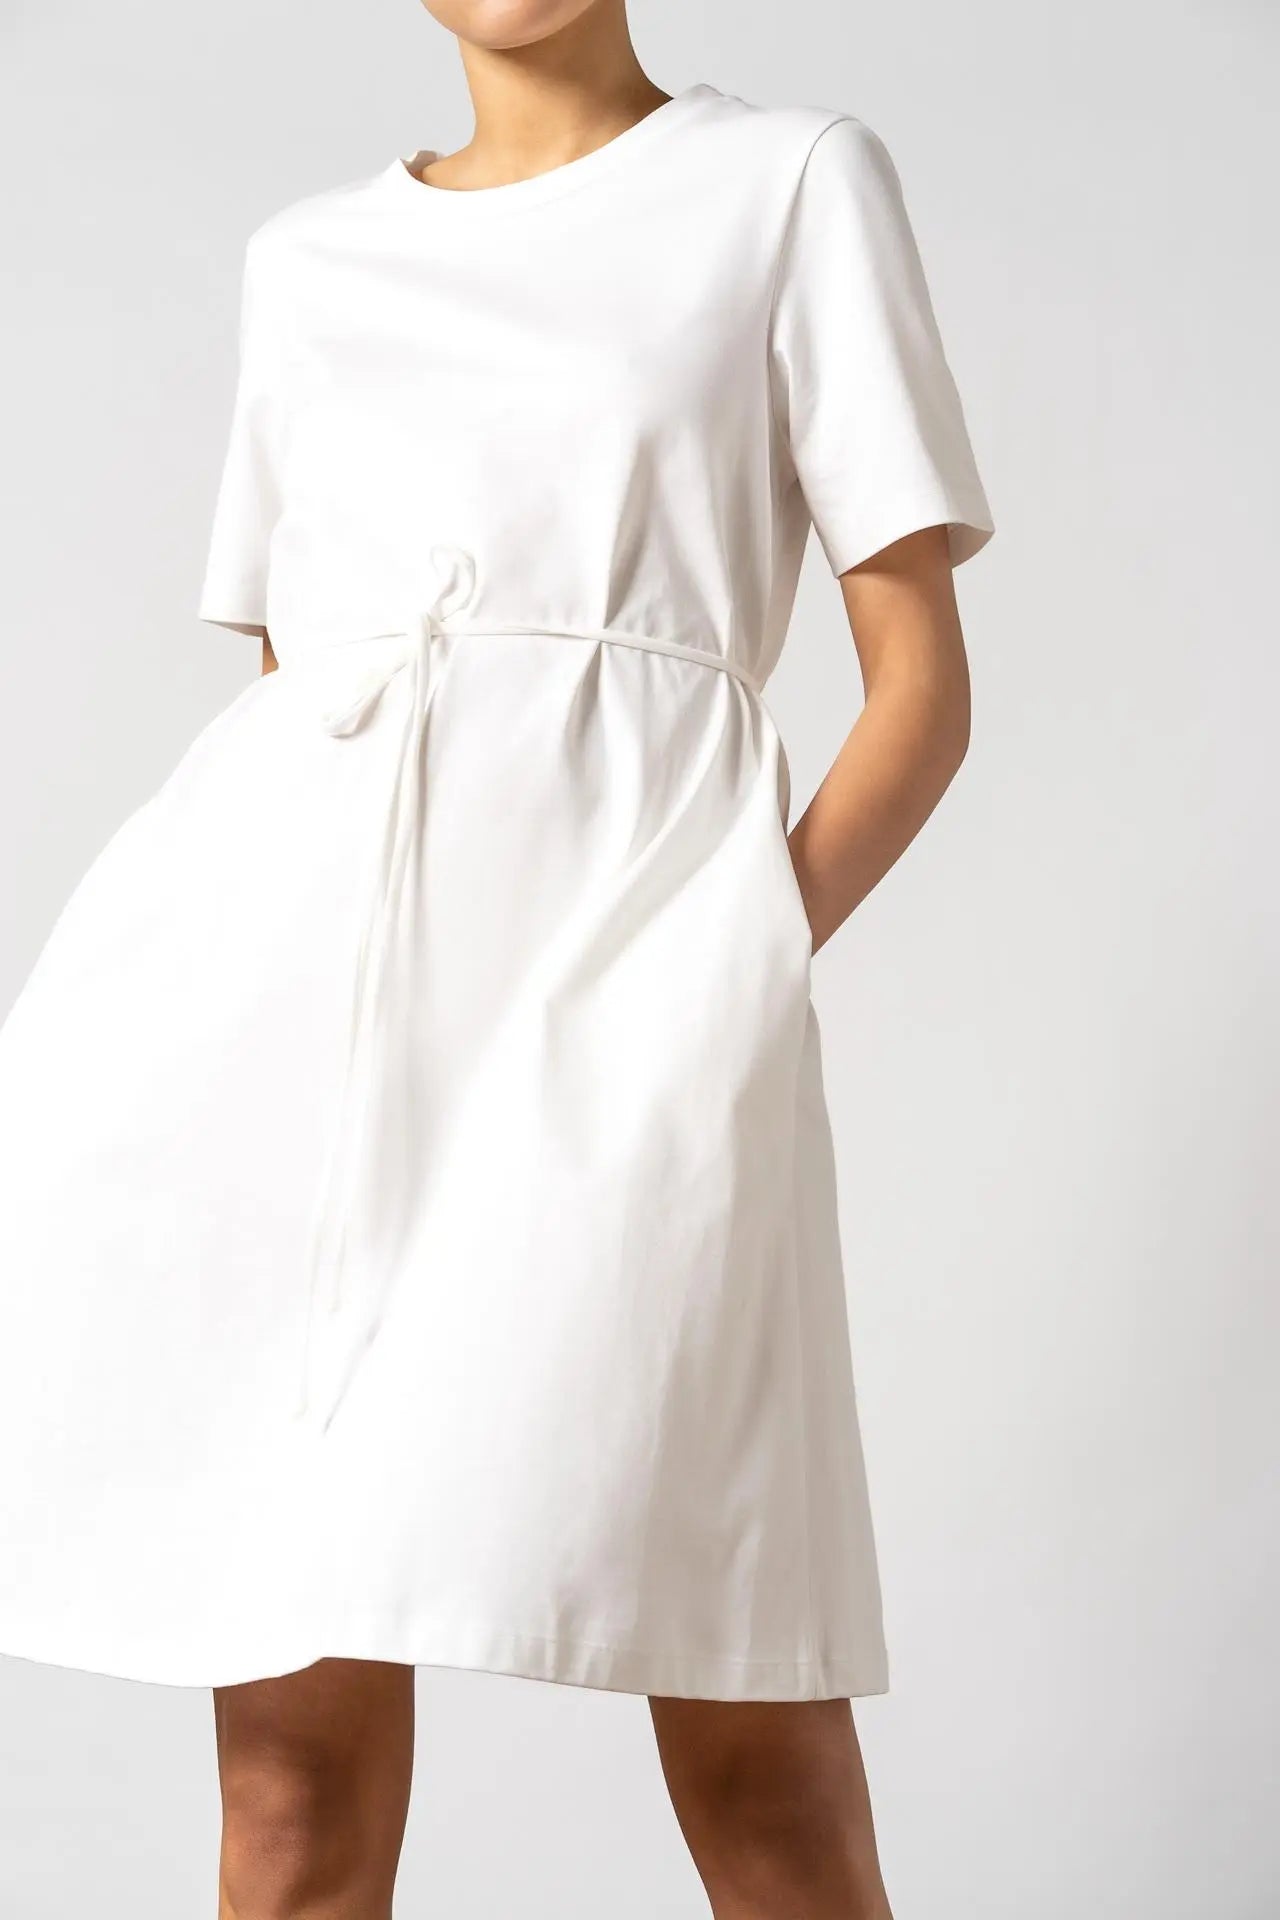 Ofelia Organic Cotton Dress White